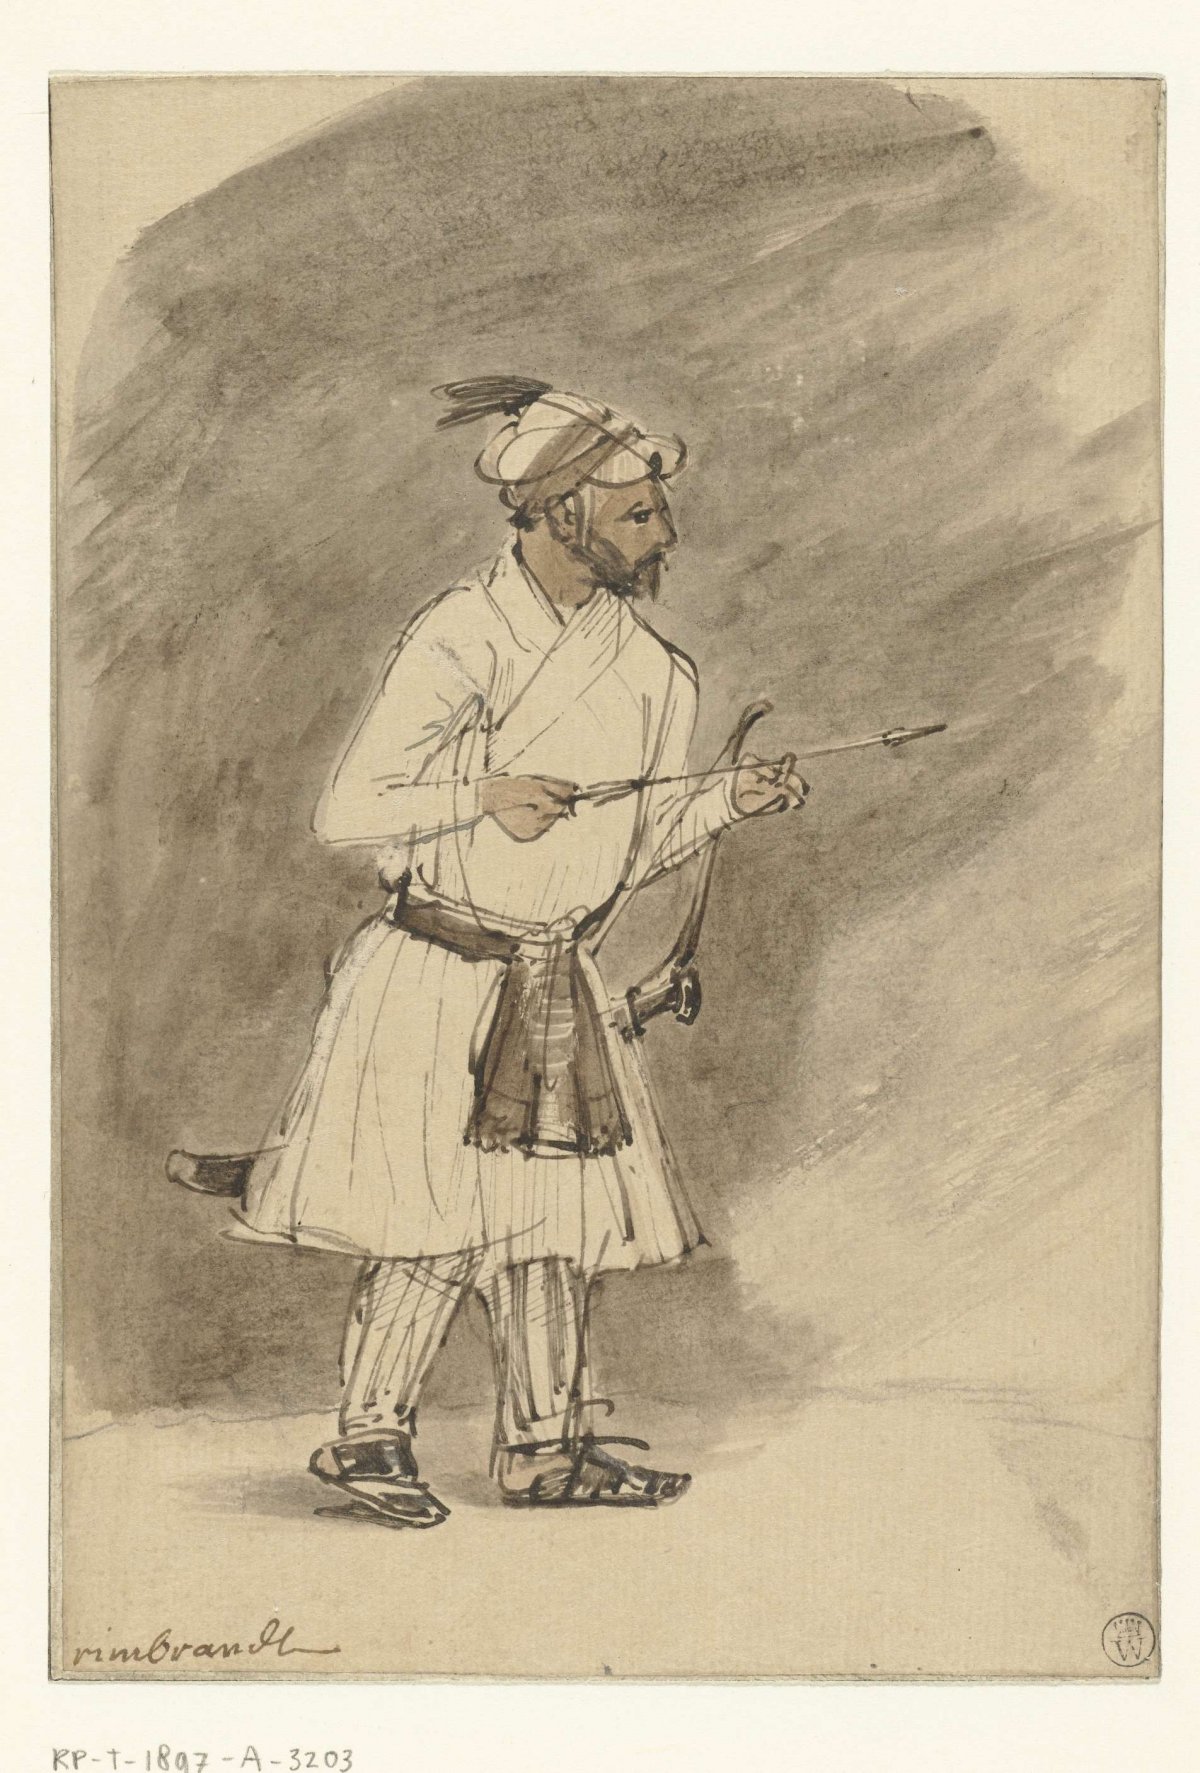 Indian Archer, Rembrandt van Rijn, c. 1656 - c. 1658